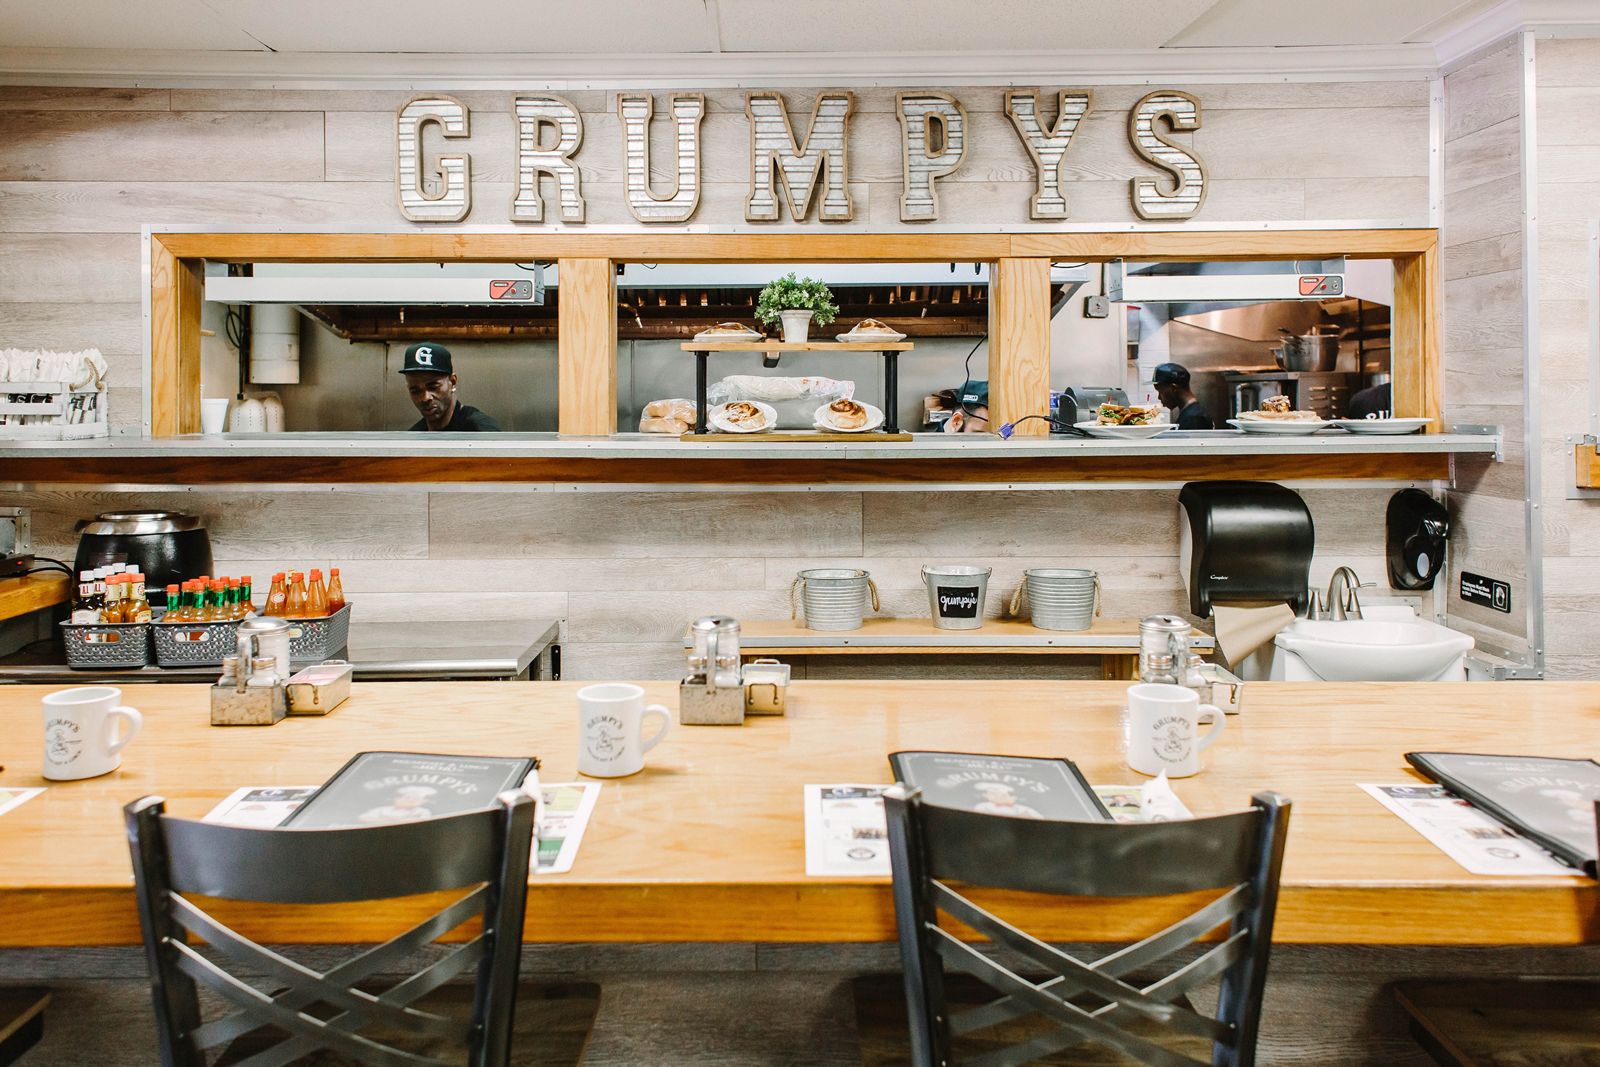 Le restaurant Grumpy's poursuit son expansion dans le nord-est de la Floride avec un nouvel emplacement Wildlight